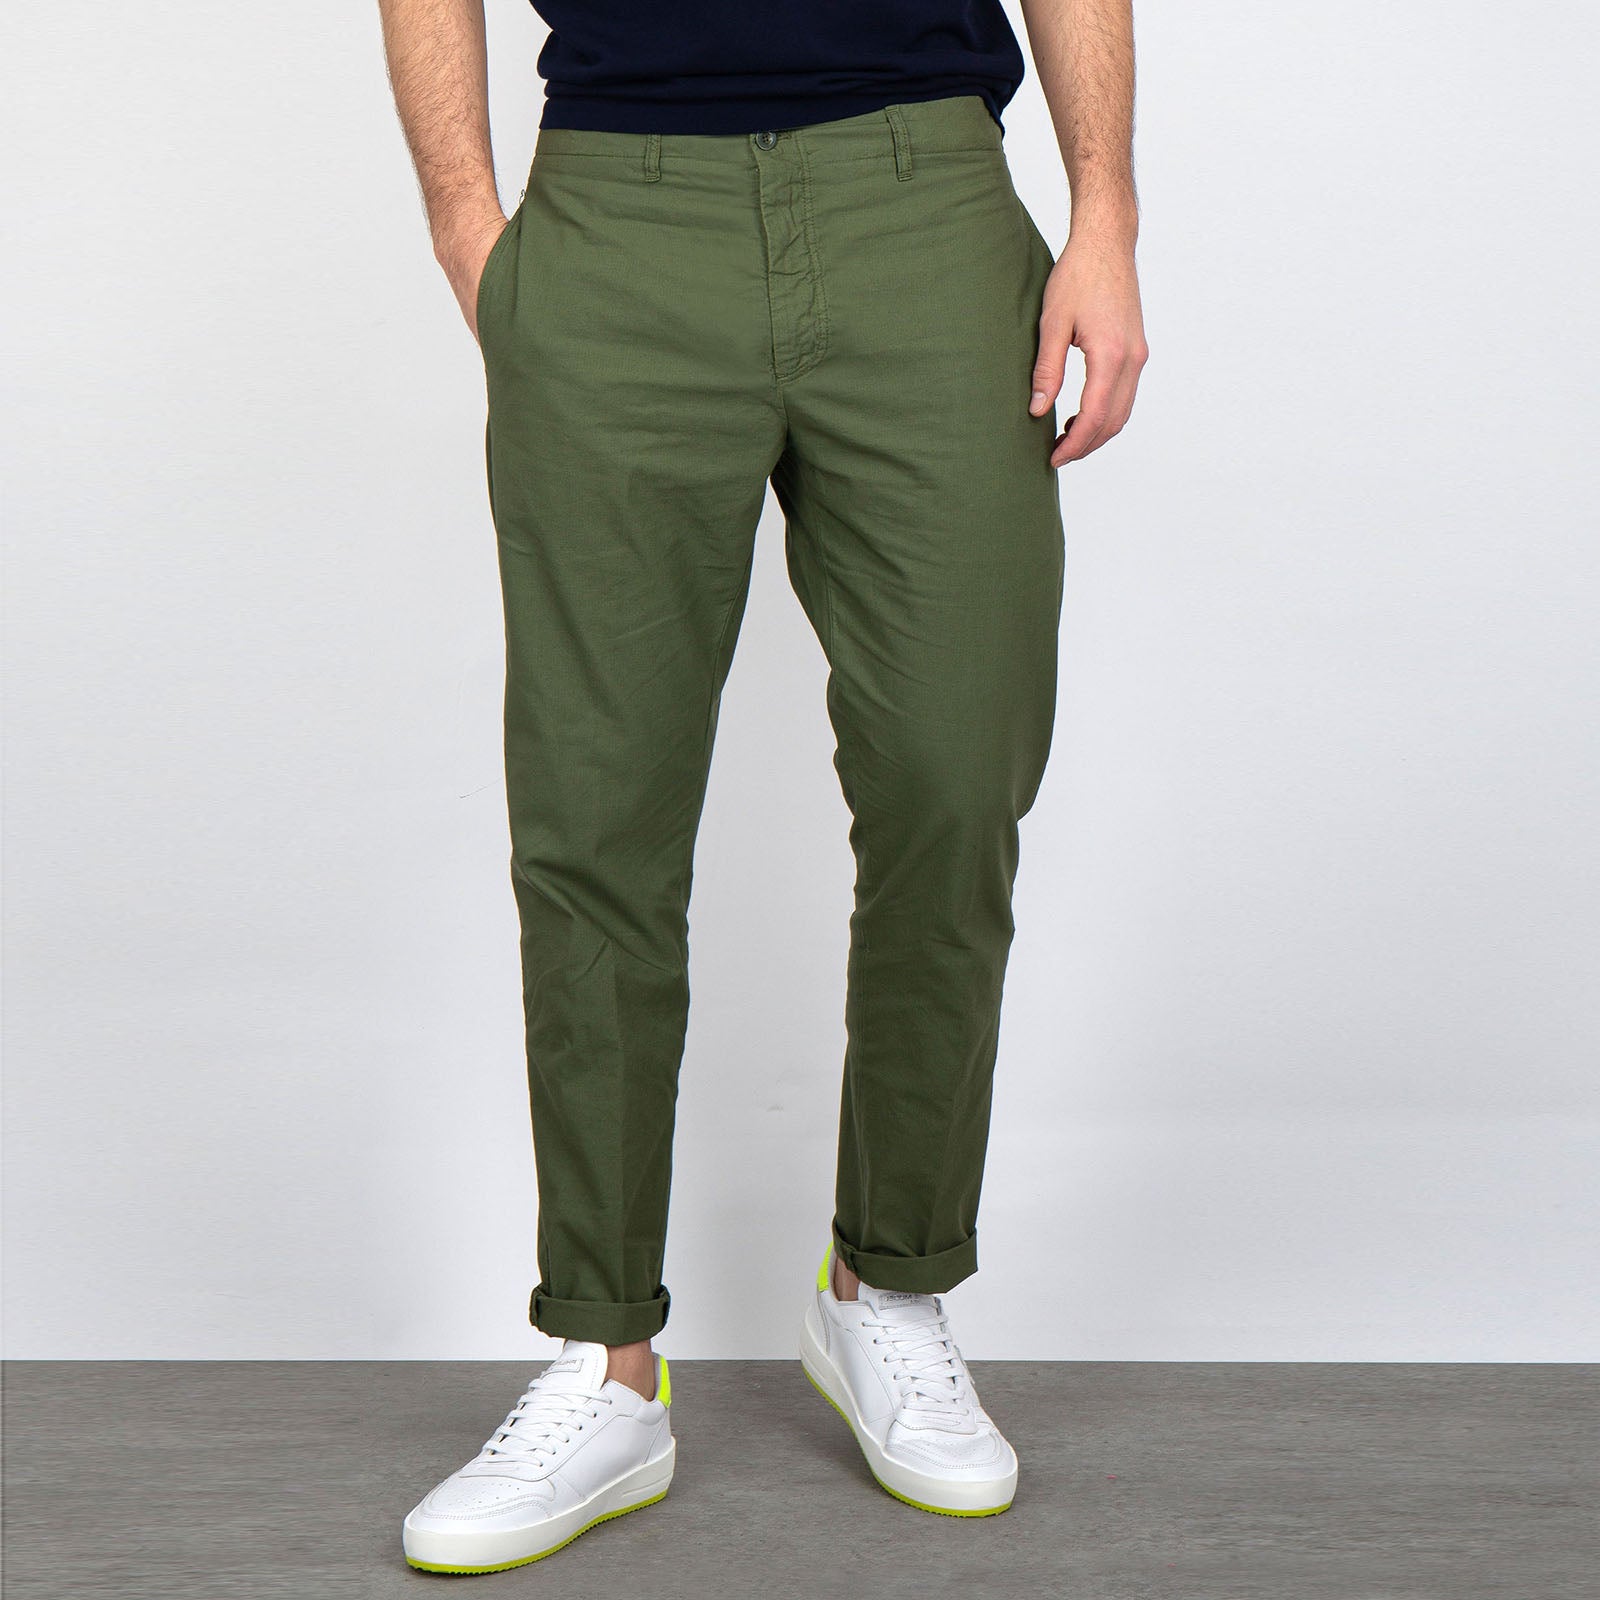 Department Five Pantalone Cotone Verde Militare - 7